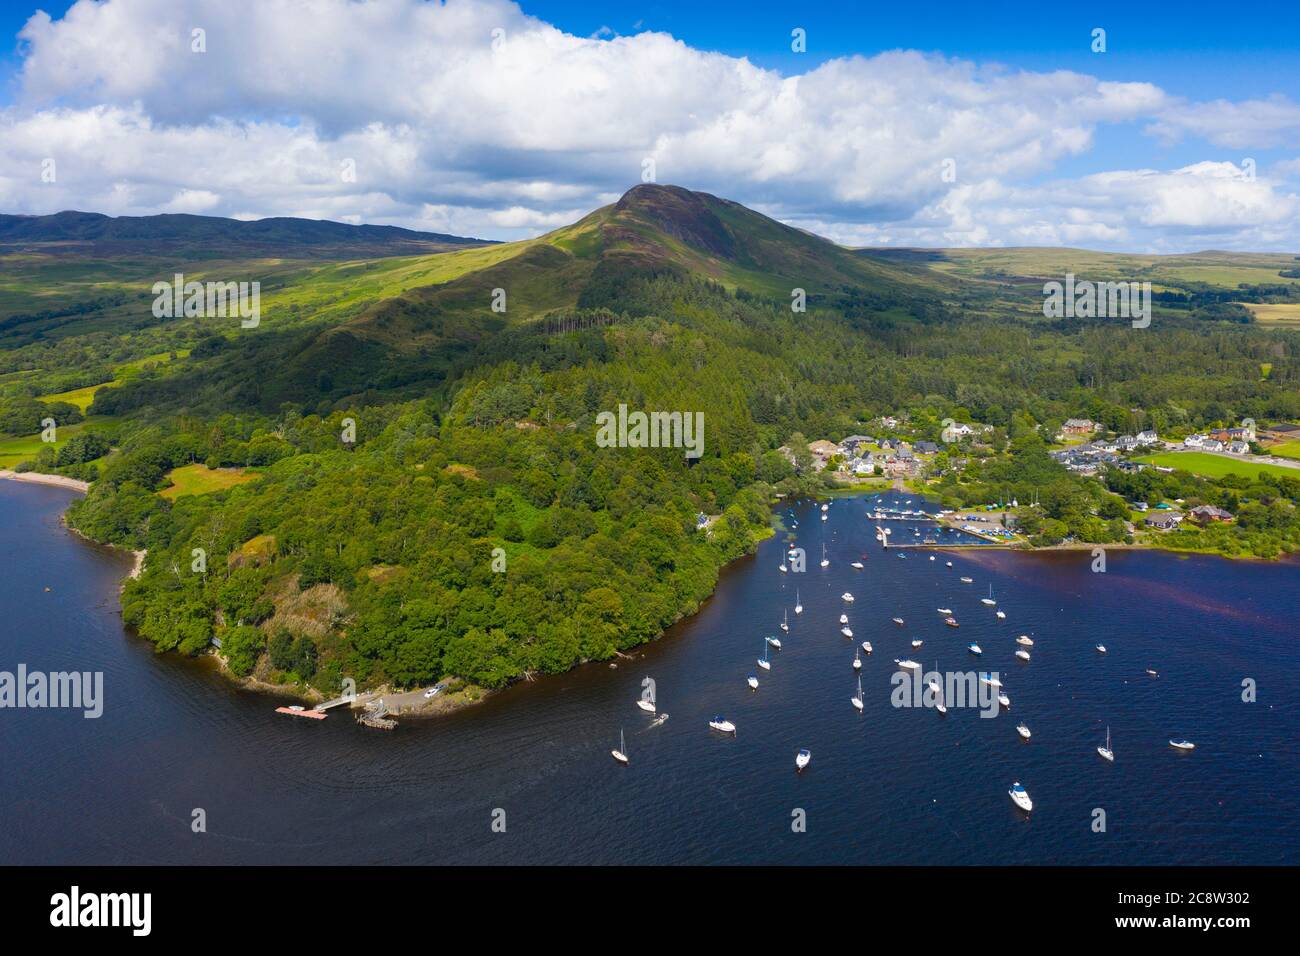 Vista aérea del pueblo de Balmaha y la colina Conic en las orillas del lago Lomond en el lago Lomond y el Parque Nacional Trossachs, Escocia, Reino Unido Foto de stock